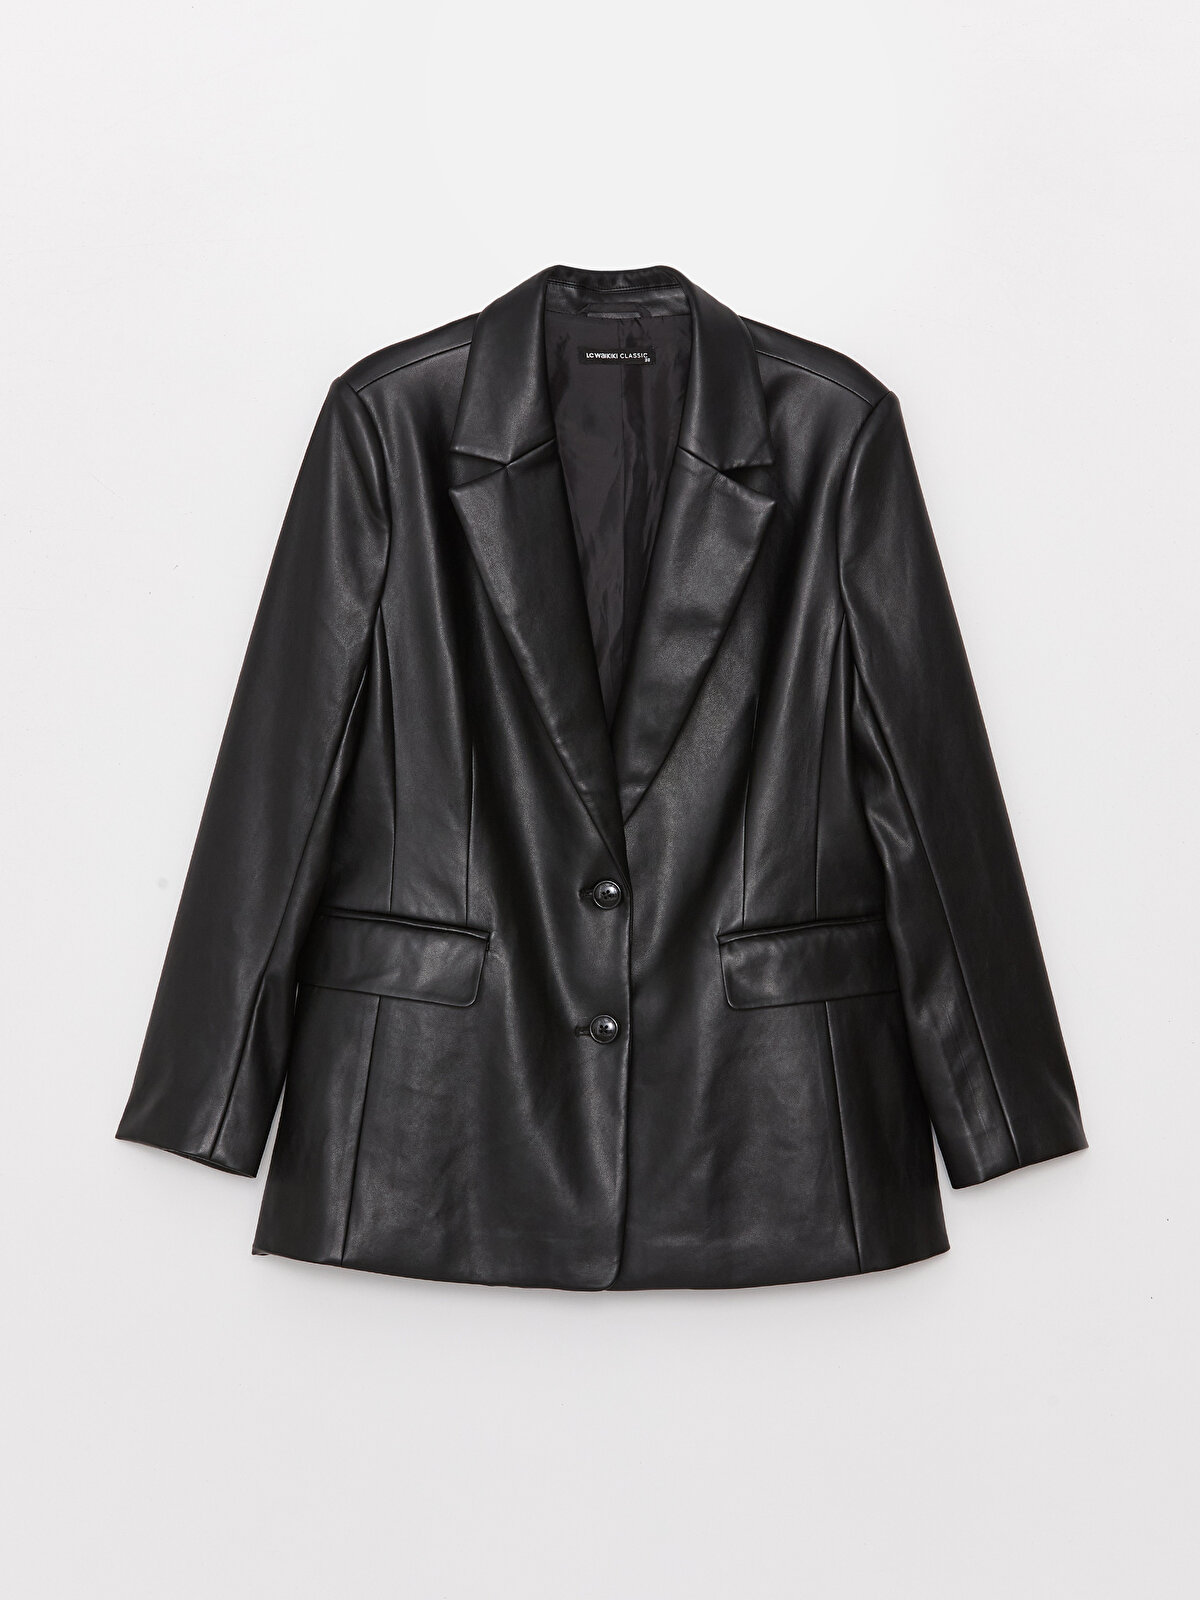 Regular Long Sleeve Faux Leather Women's Blazer Jacket 